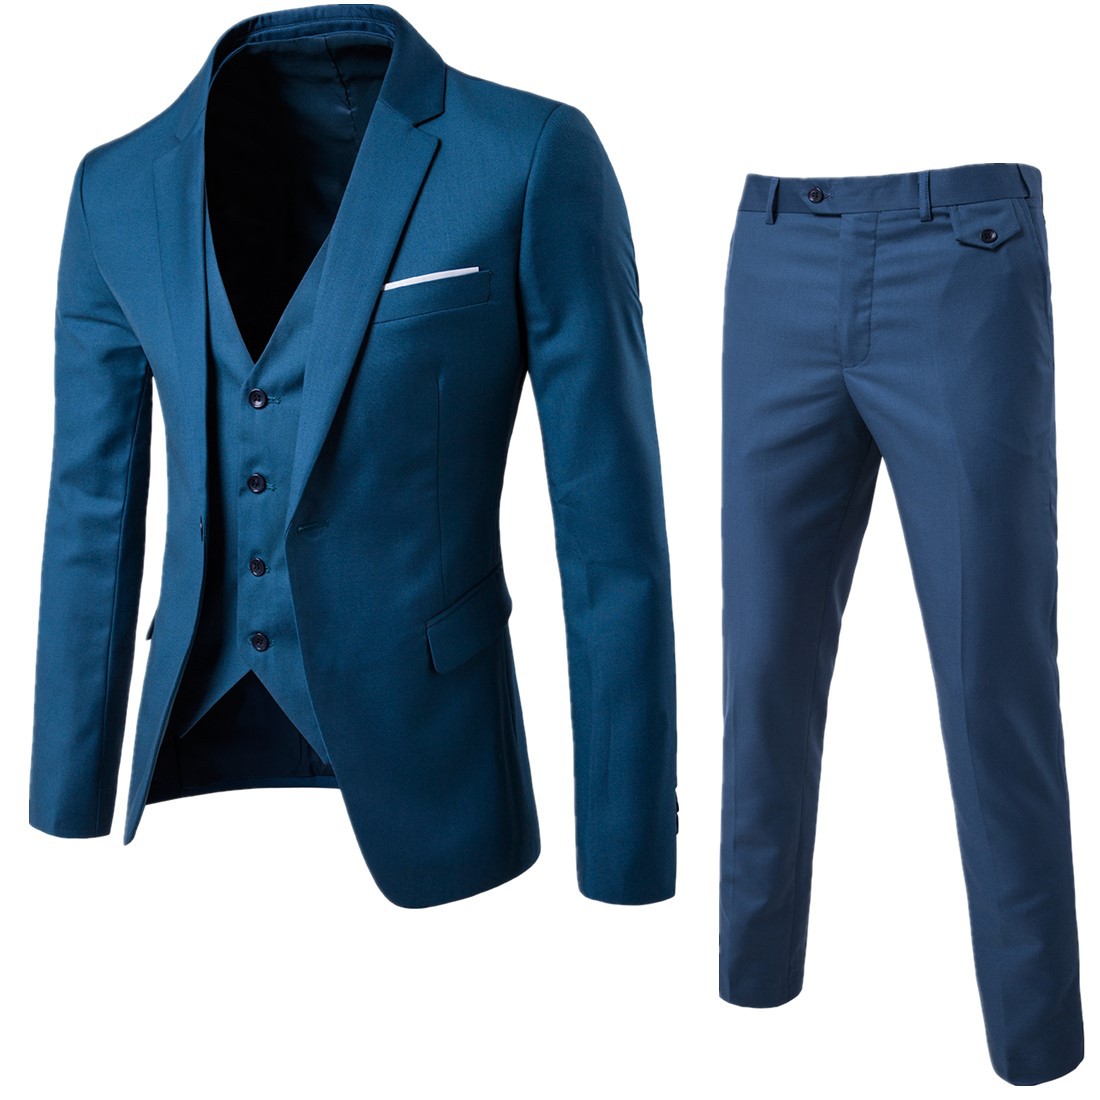 Spring new fashion men's suit business work uniform 3-piece casual suit suit suit for men